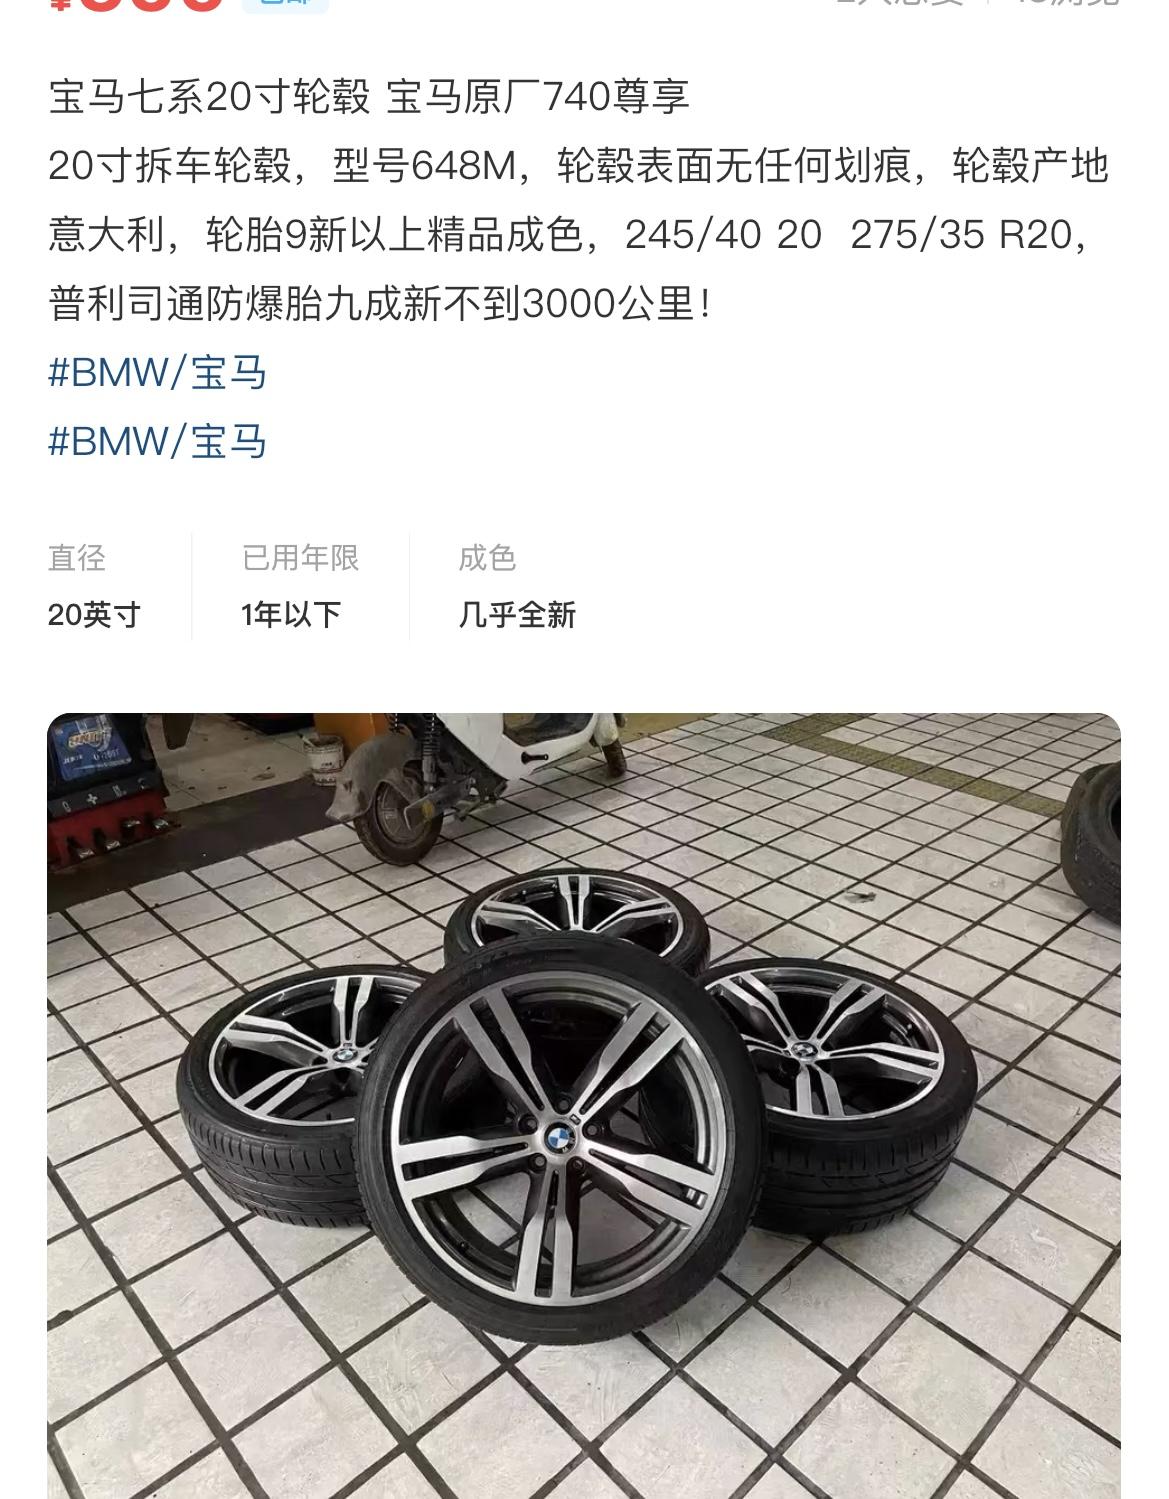 宝马5系 20寸和19寸的轮胎扁平比和宽度都是一样的情况下，鼓包概率是不是也一样。图里20寸数据和原装19寸数据除了轮胎